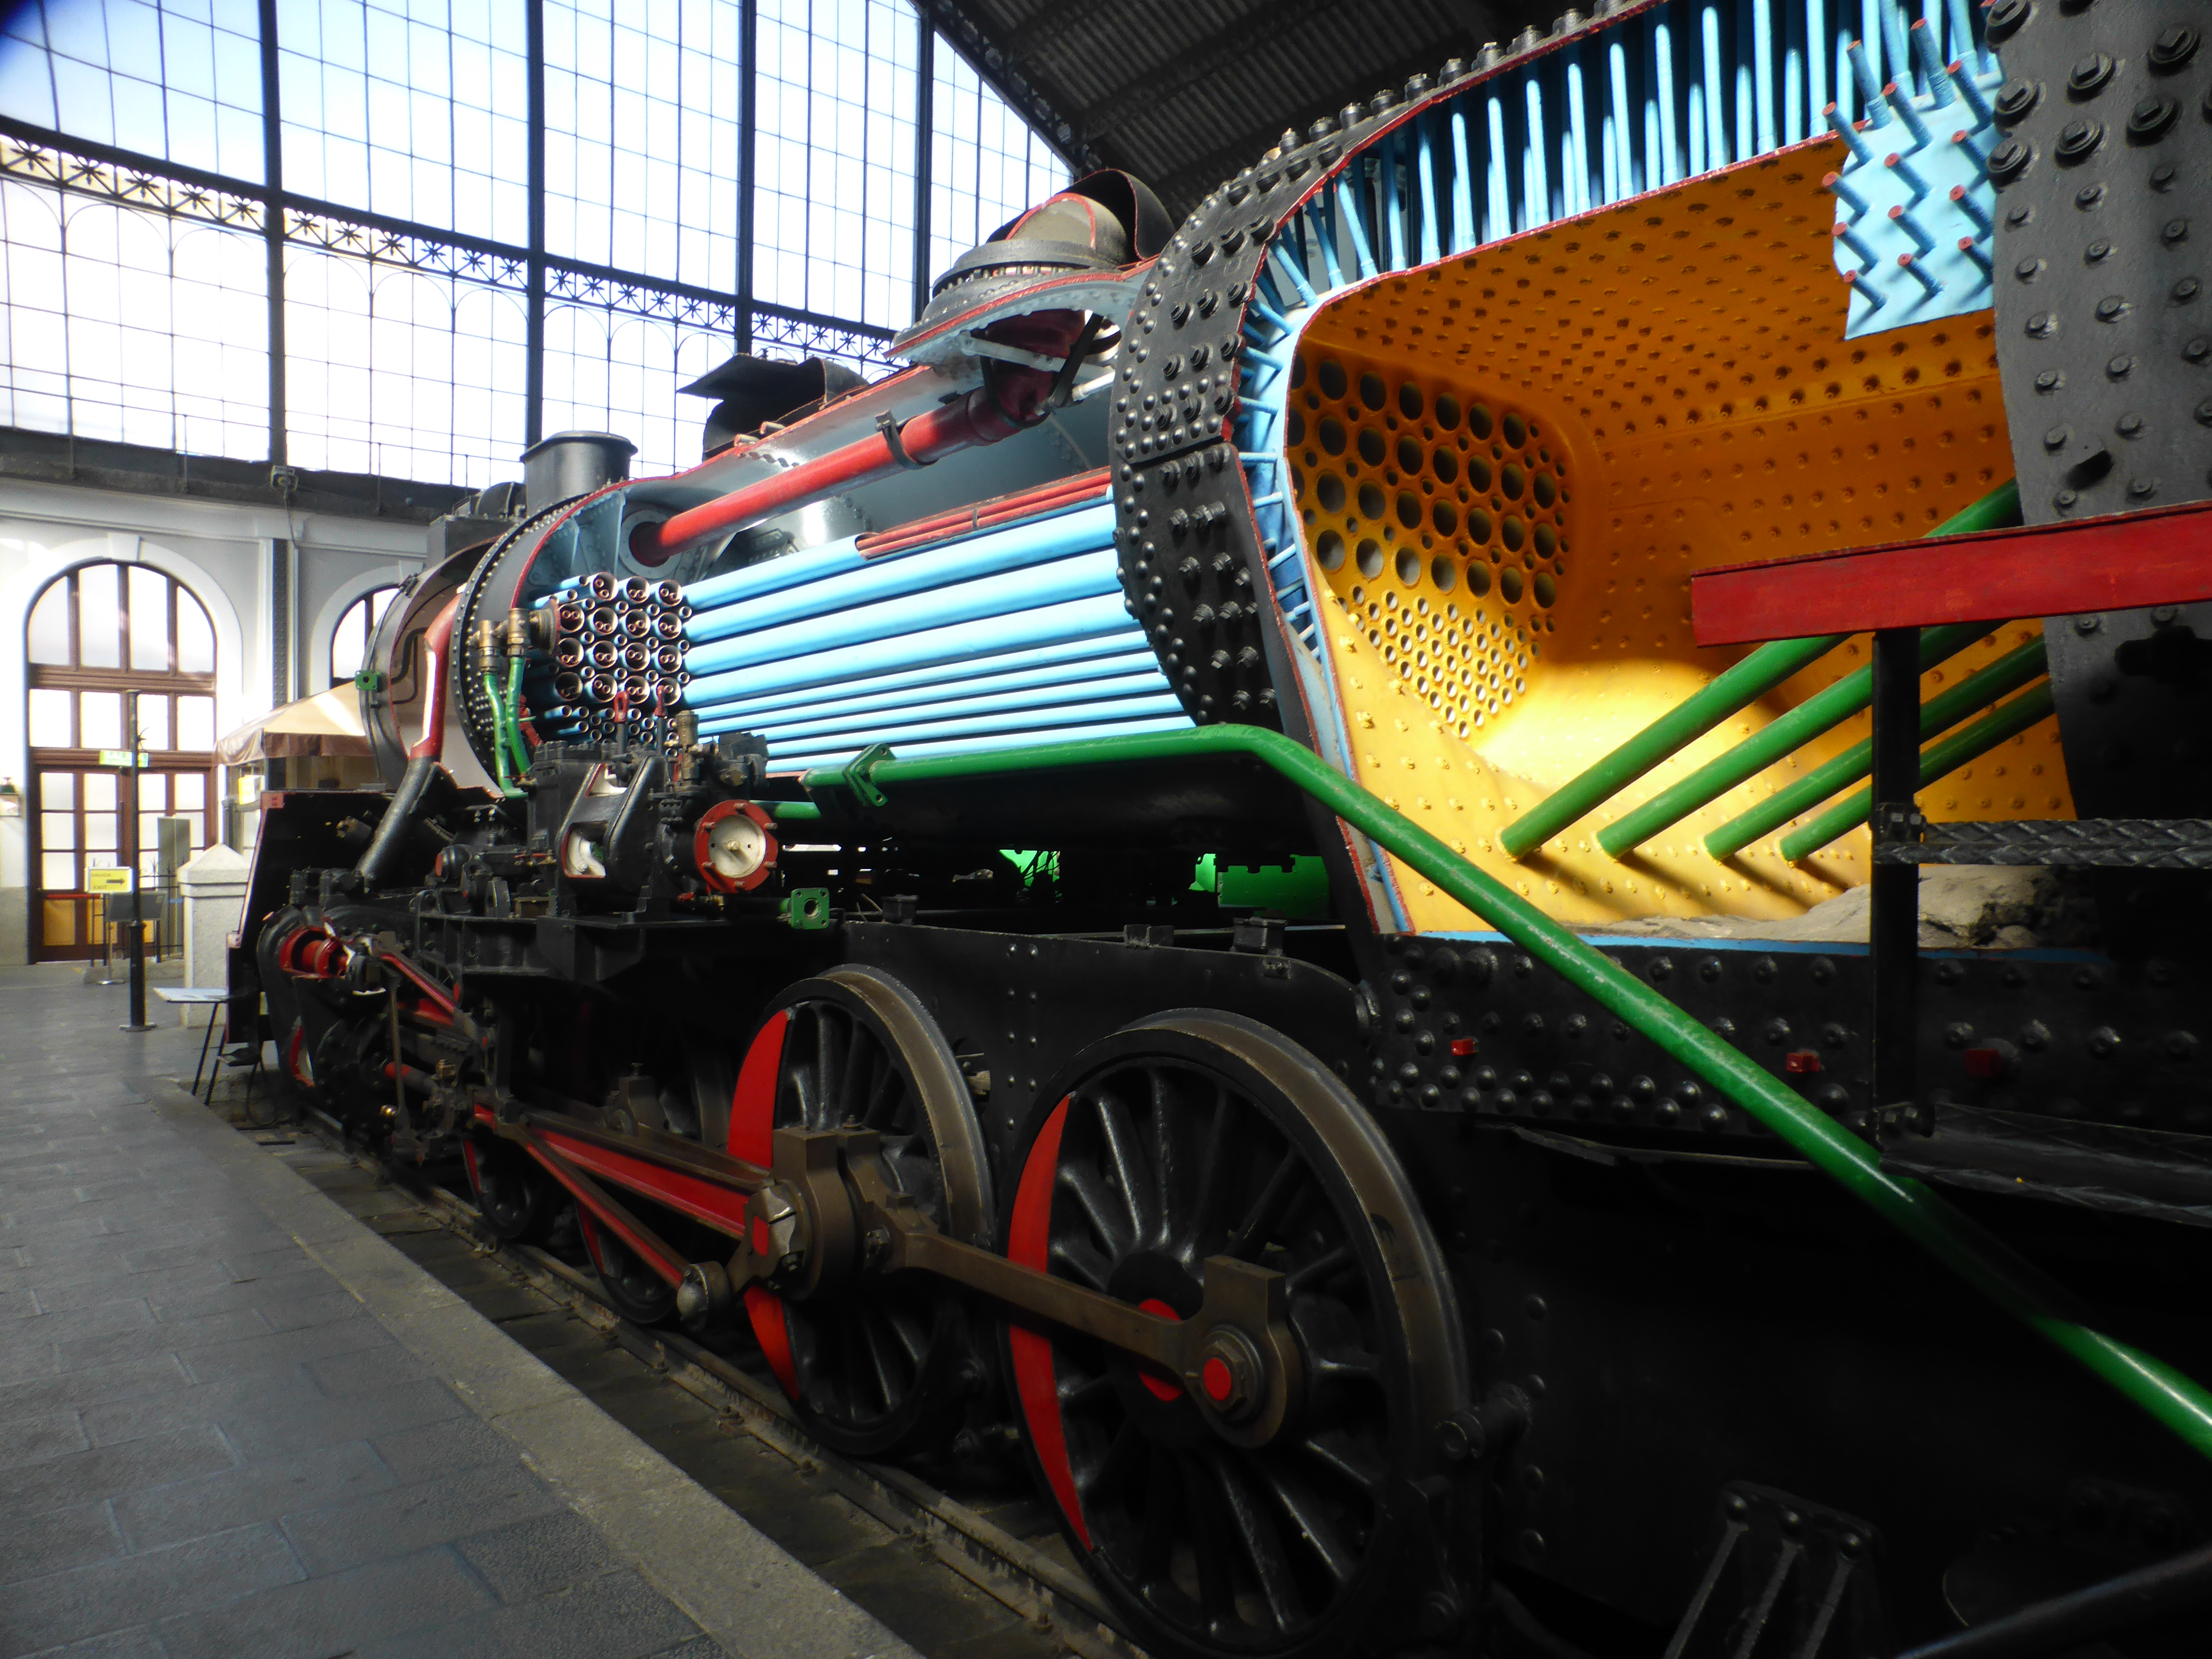 Archivo:Locomotora de vapor Mikado, seccionada. Museo del Ferrocarril Madrid. Spain.jpg - Wikipedia, la enciclopedia libre